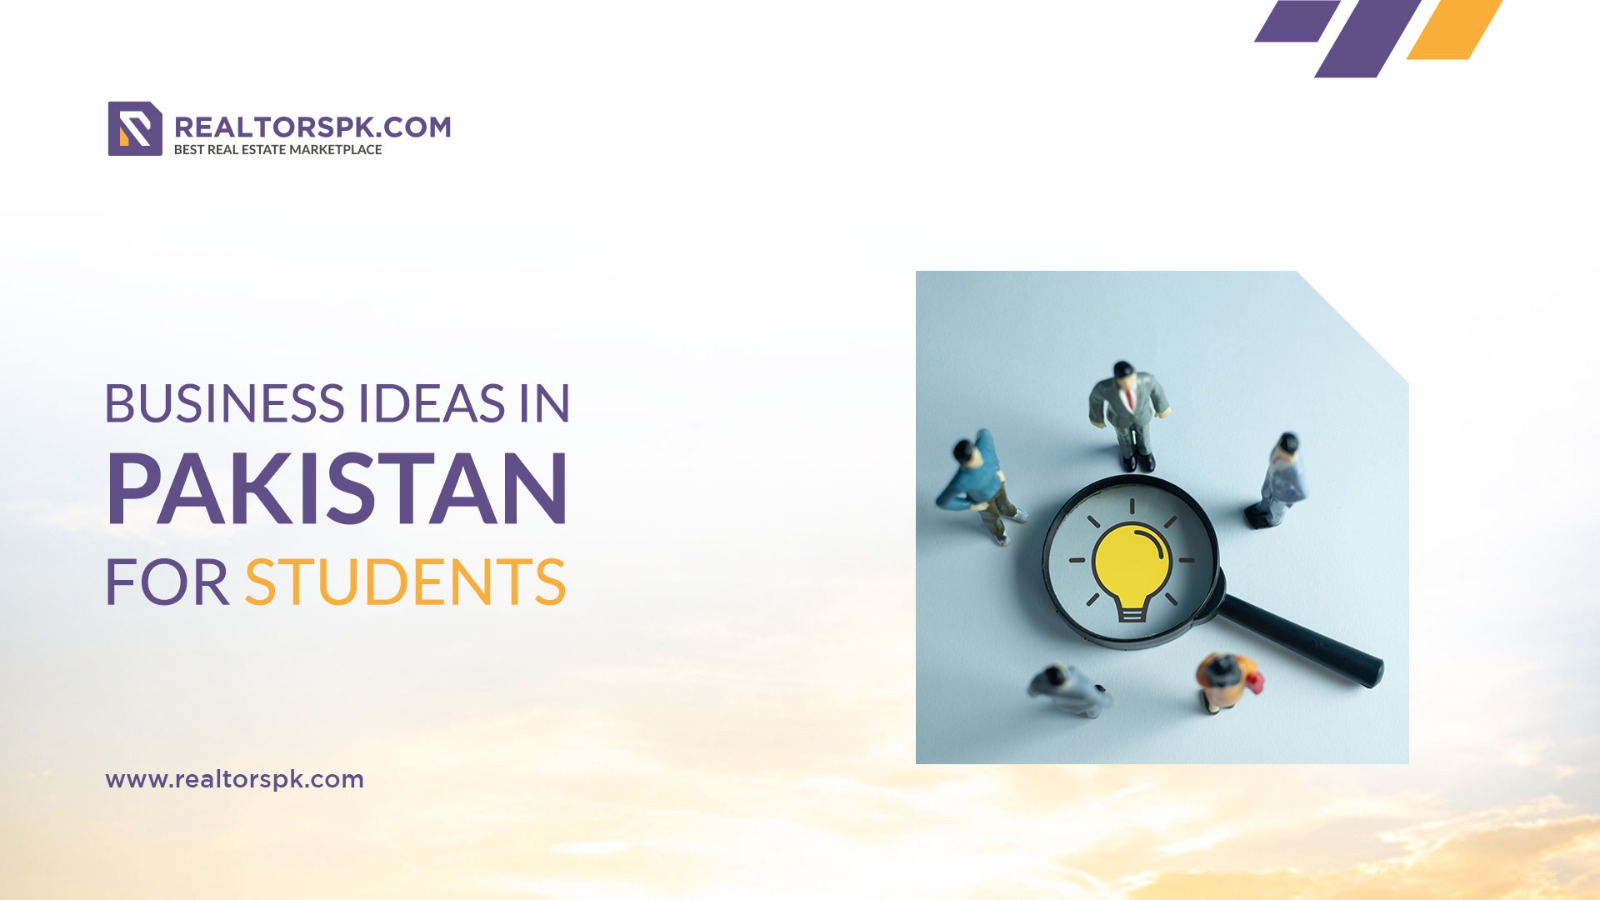 business ideas in pakistan for students-realtorspk